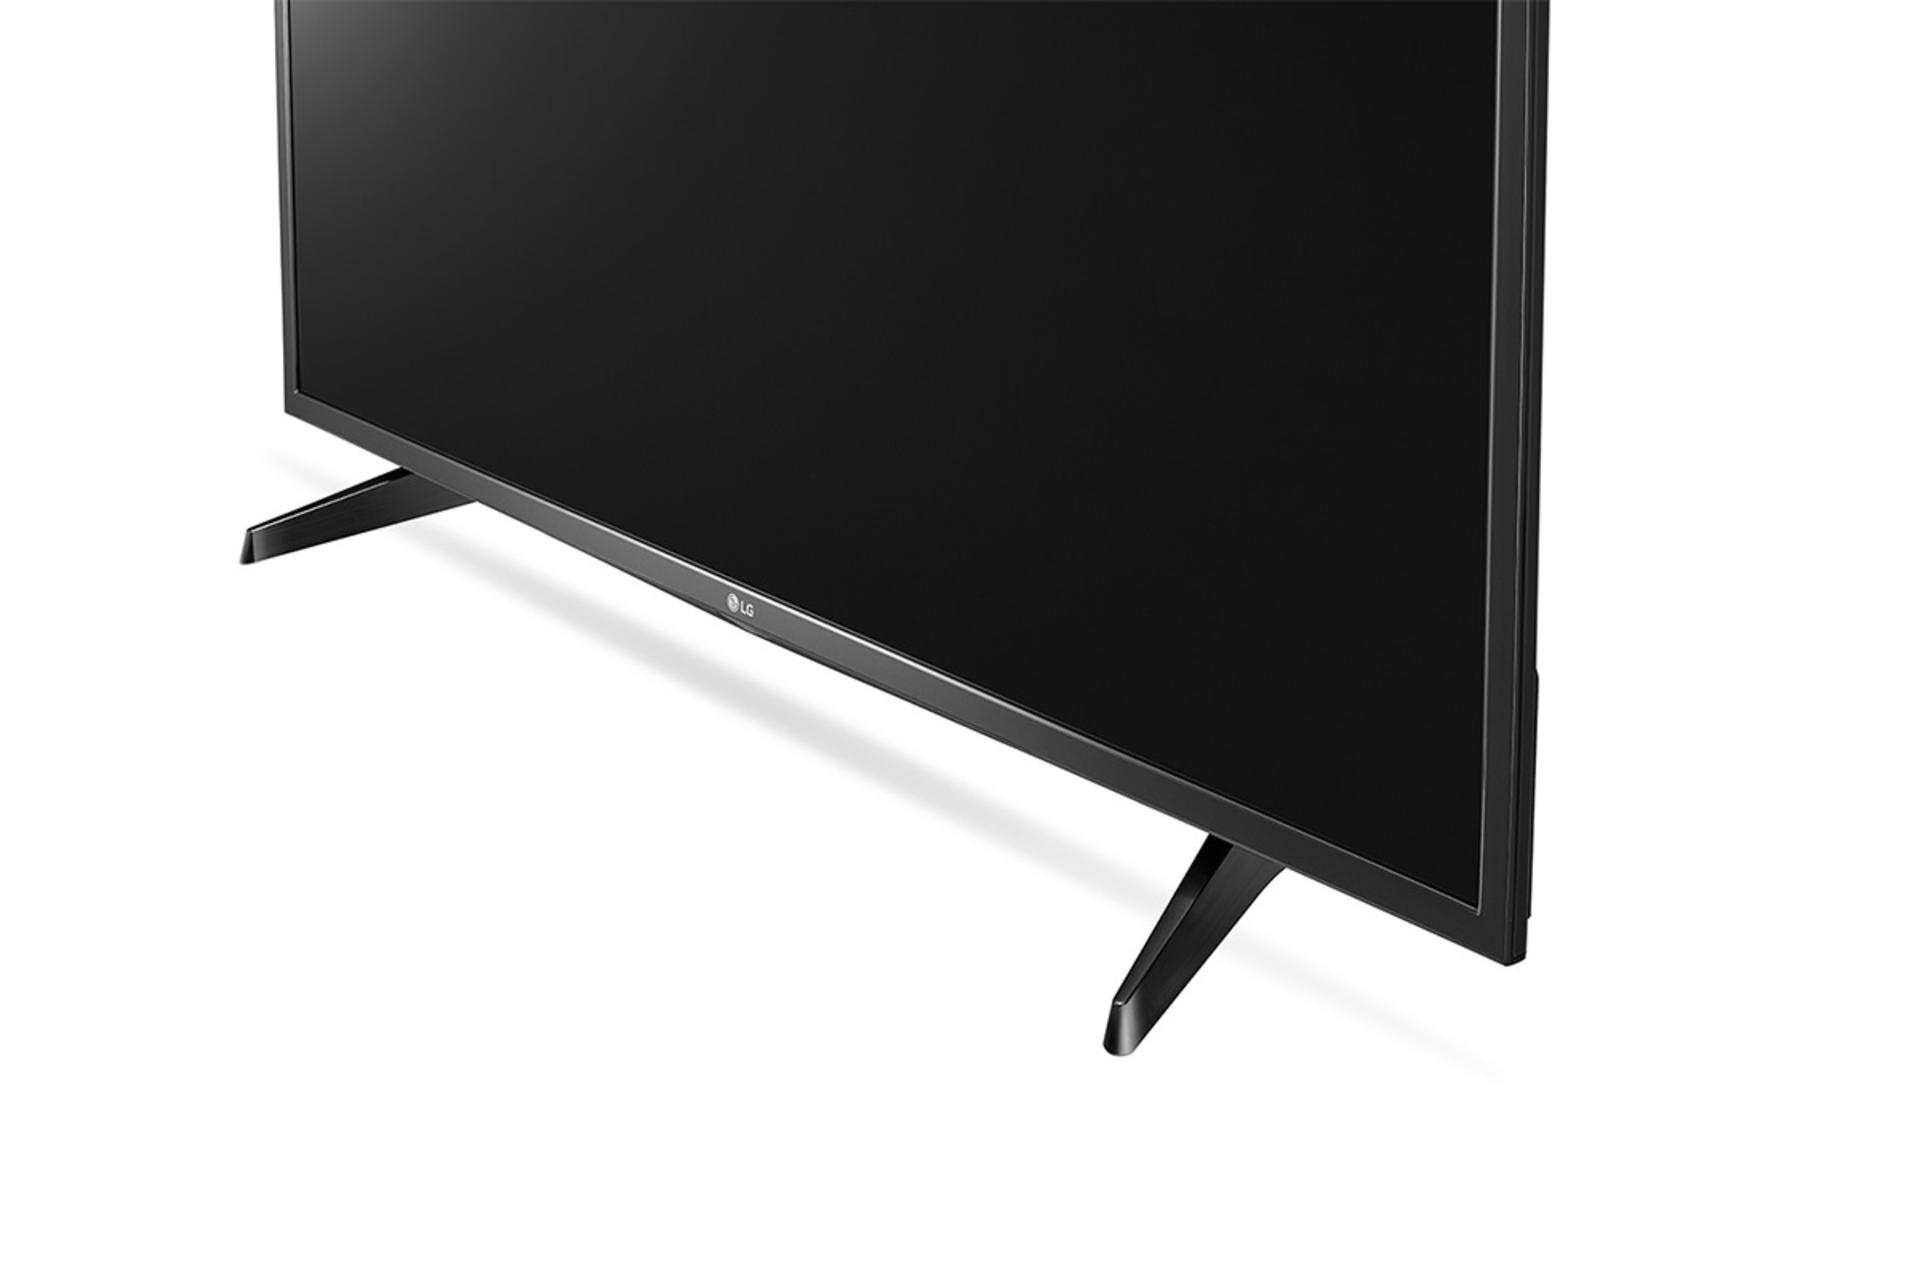 نمای نیم رخ و گوشه تلویزیون ال جی LJ52100 مدل 43 اینچ با رنگ مشکی و صفحه خاموش